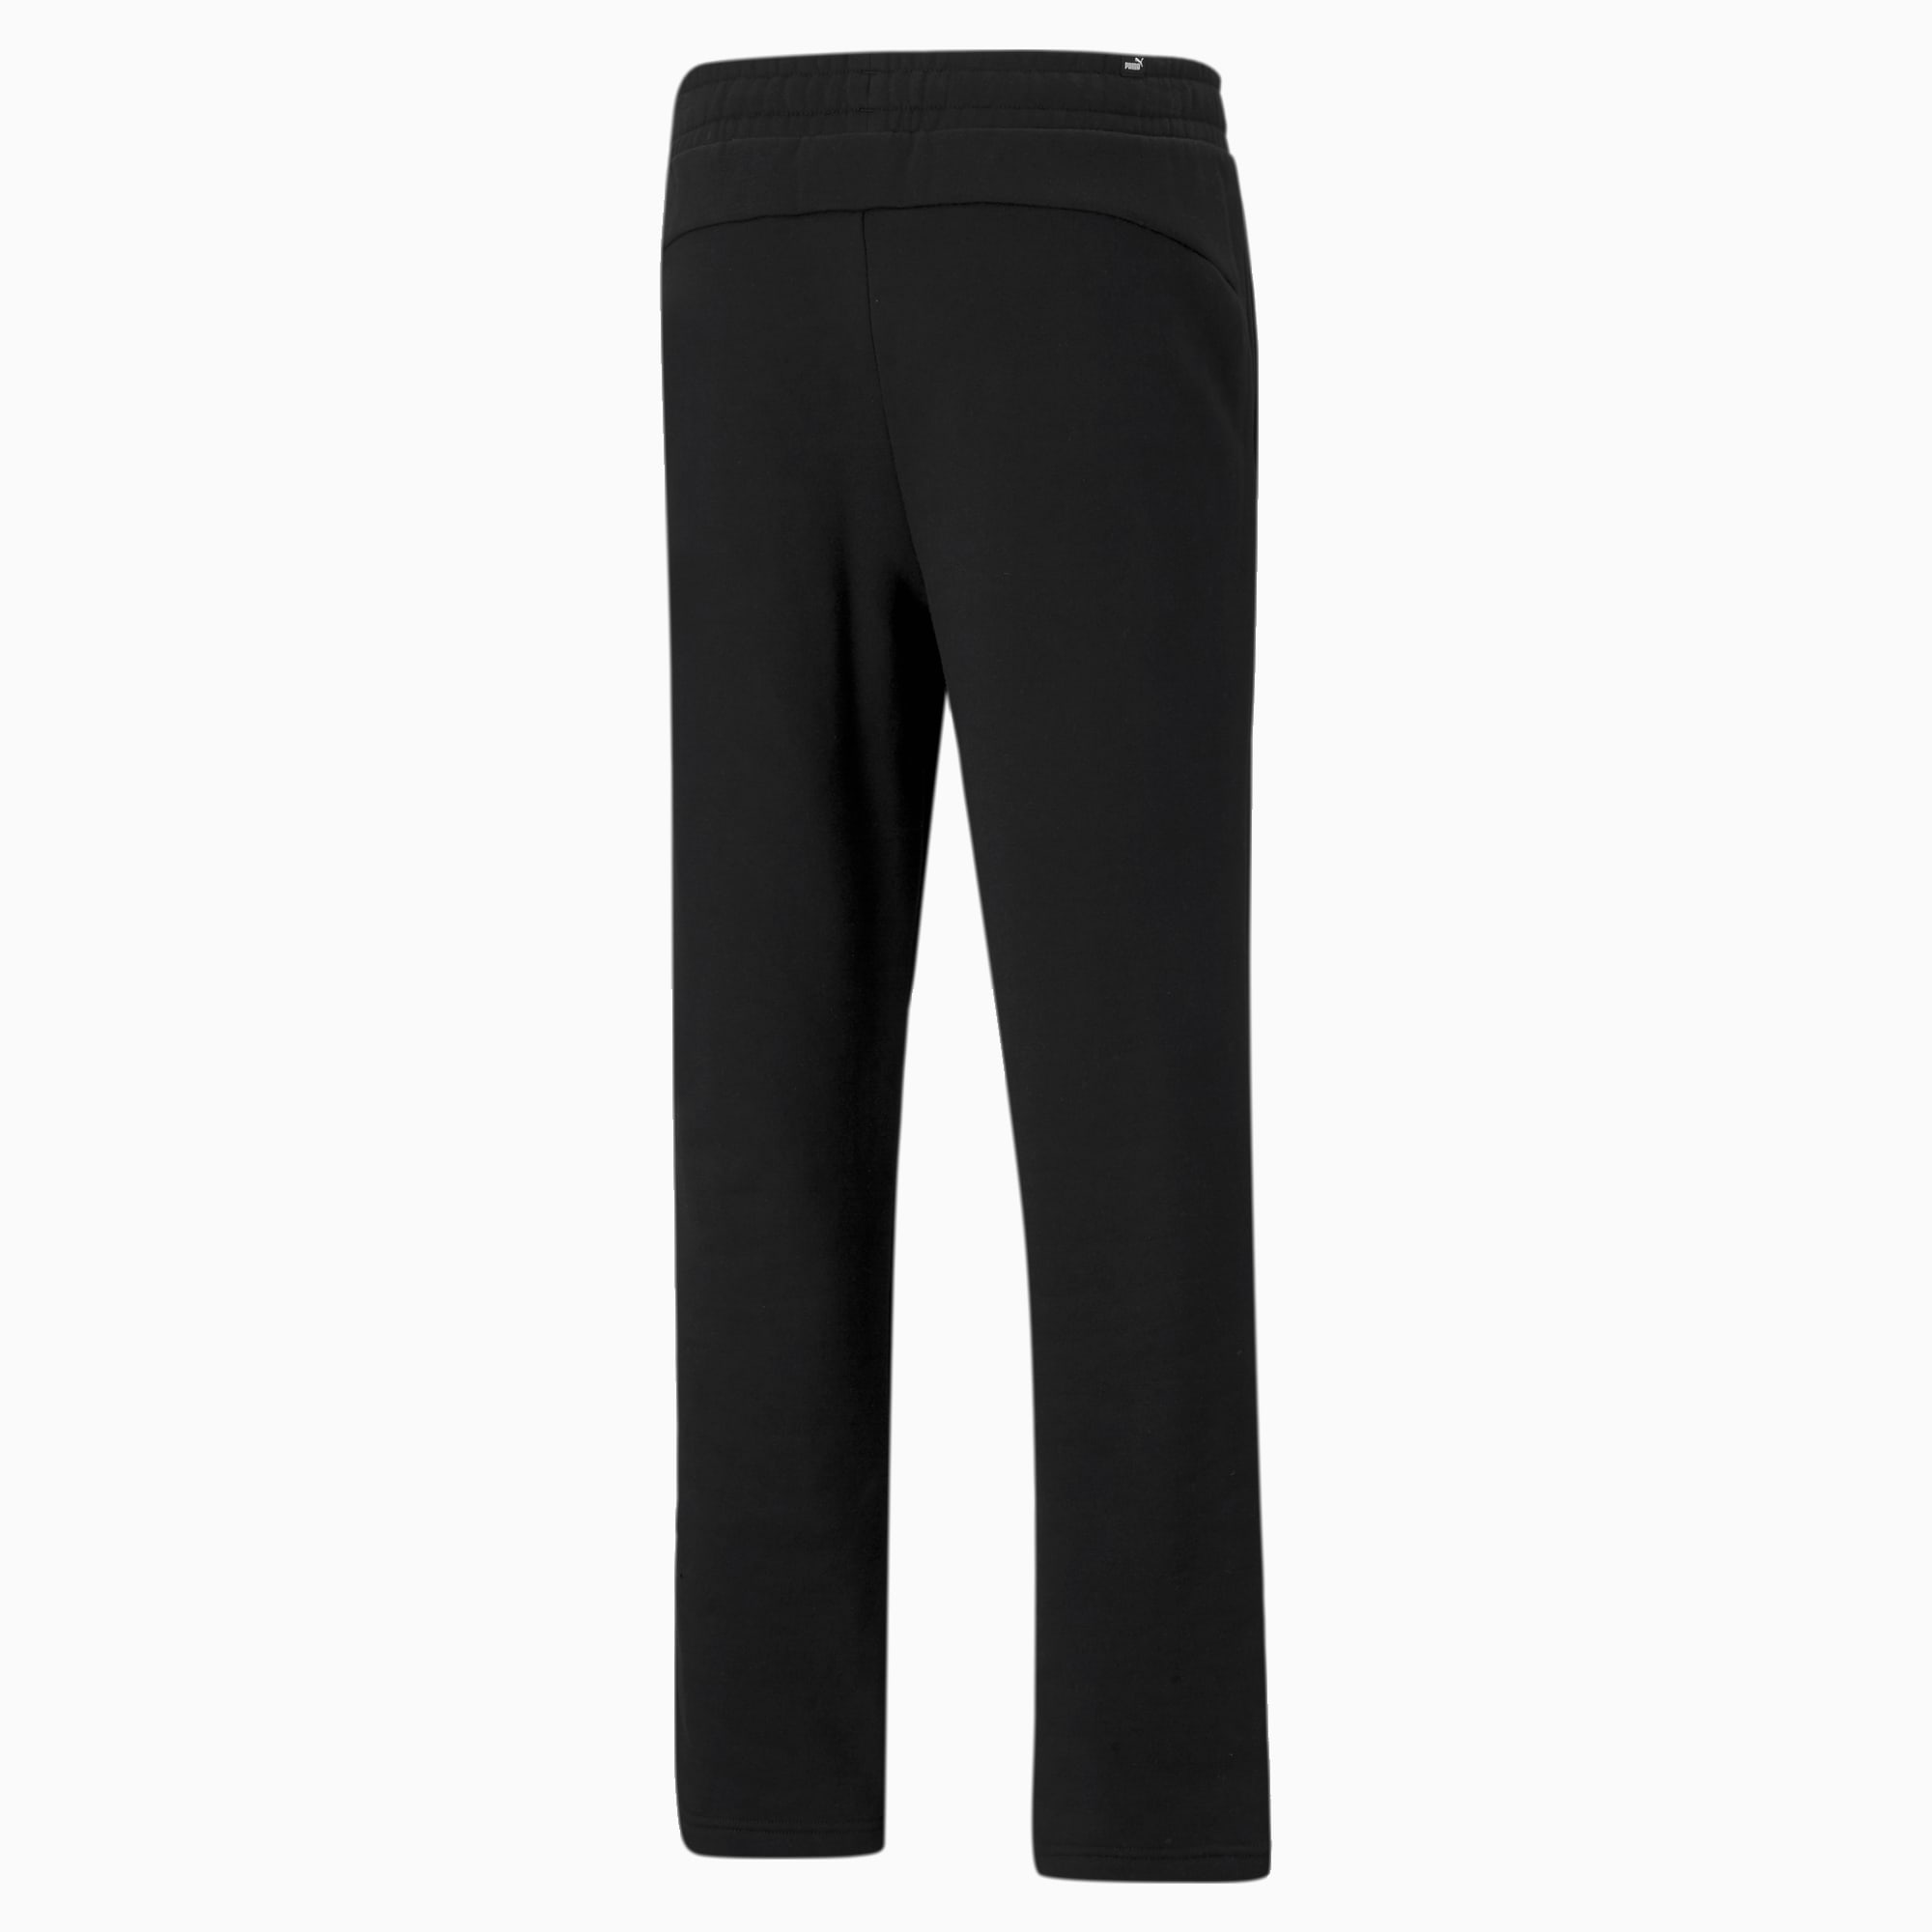 PUMA Essentials Logo Men's Pants, Black, Size XL, Clothing